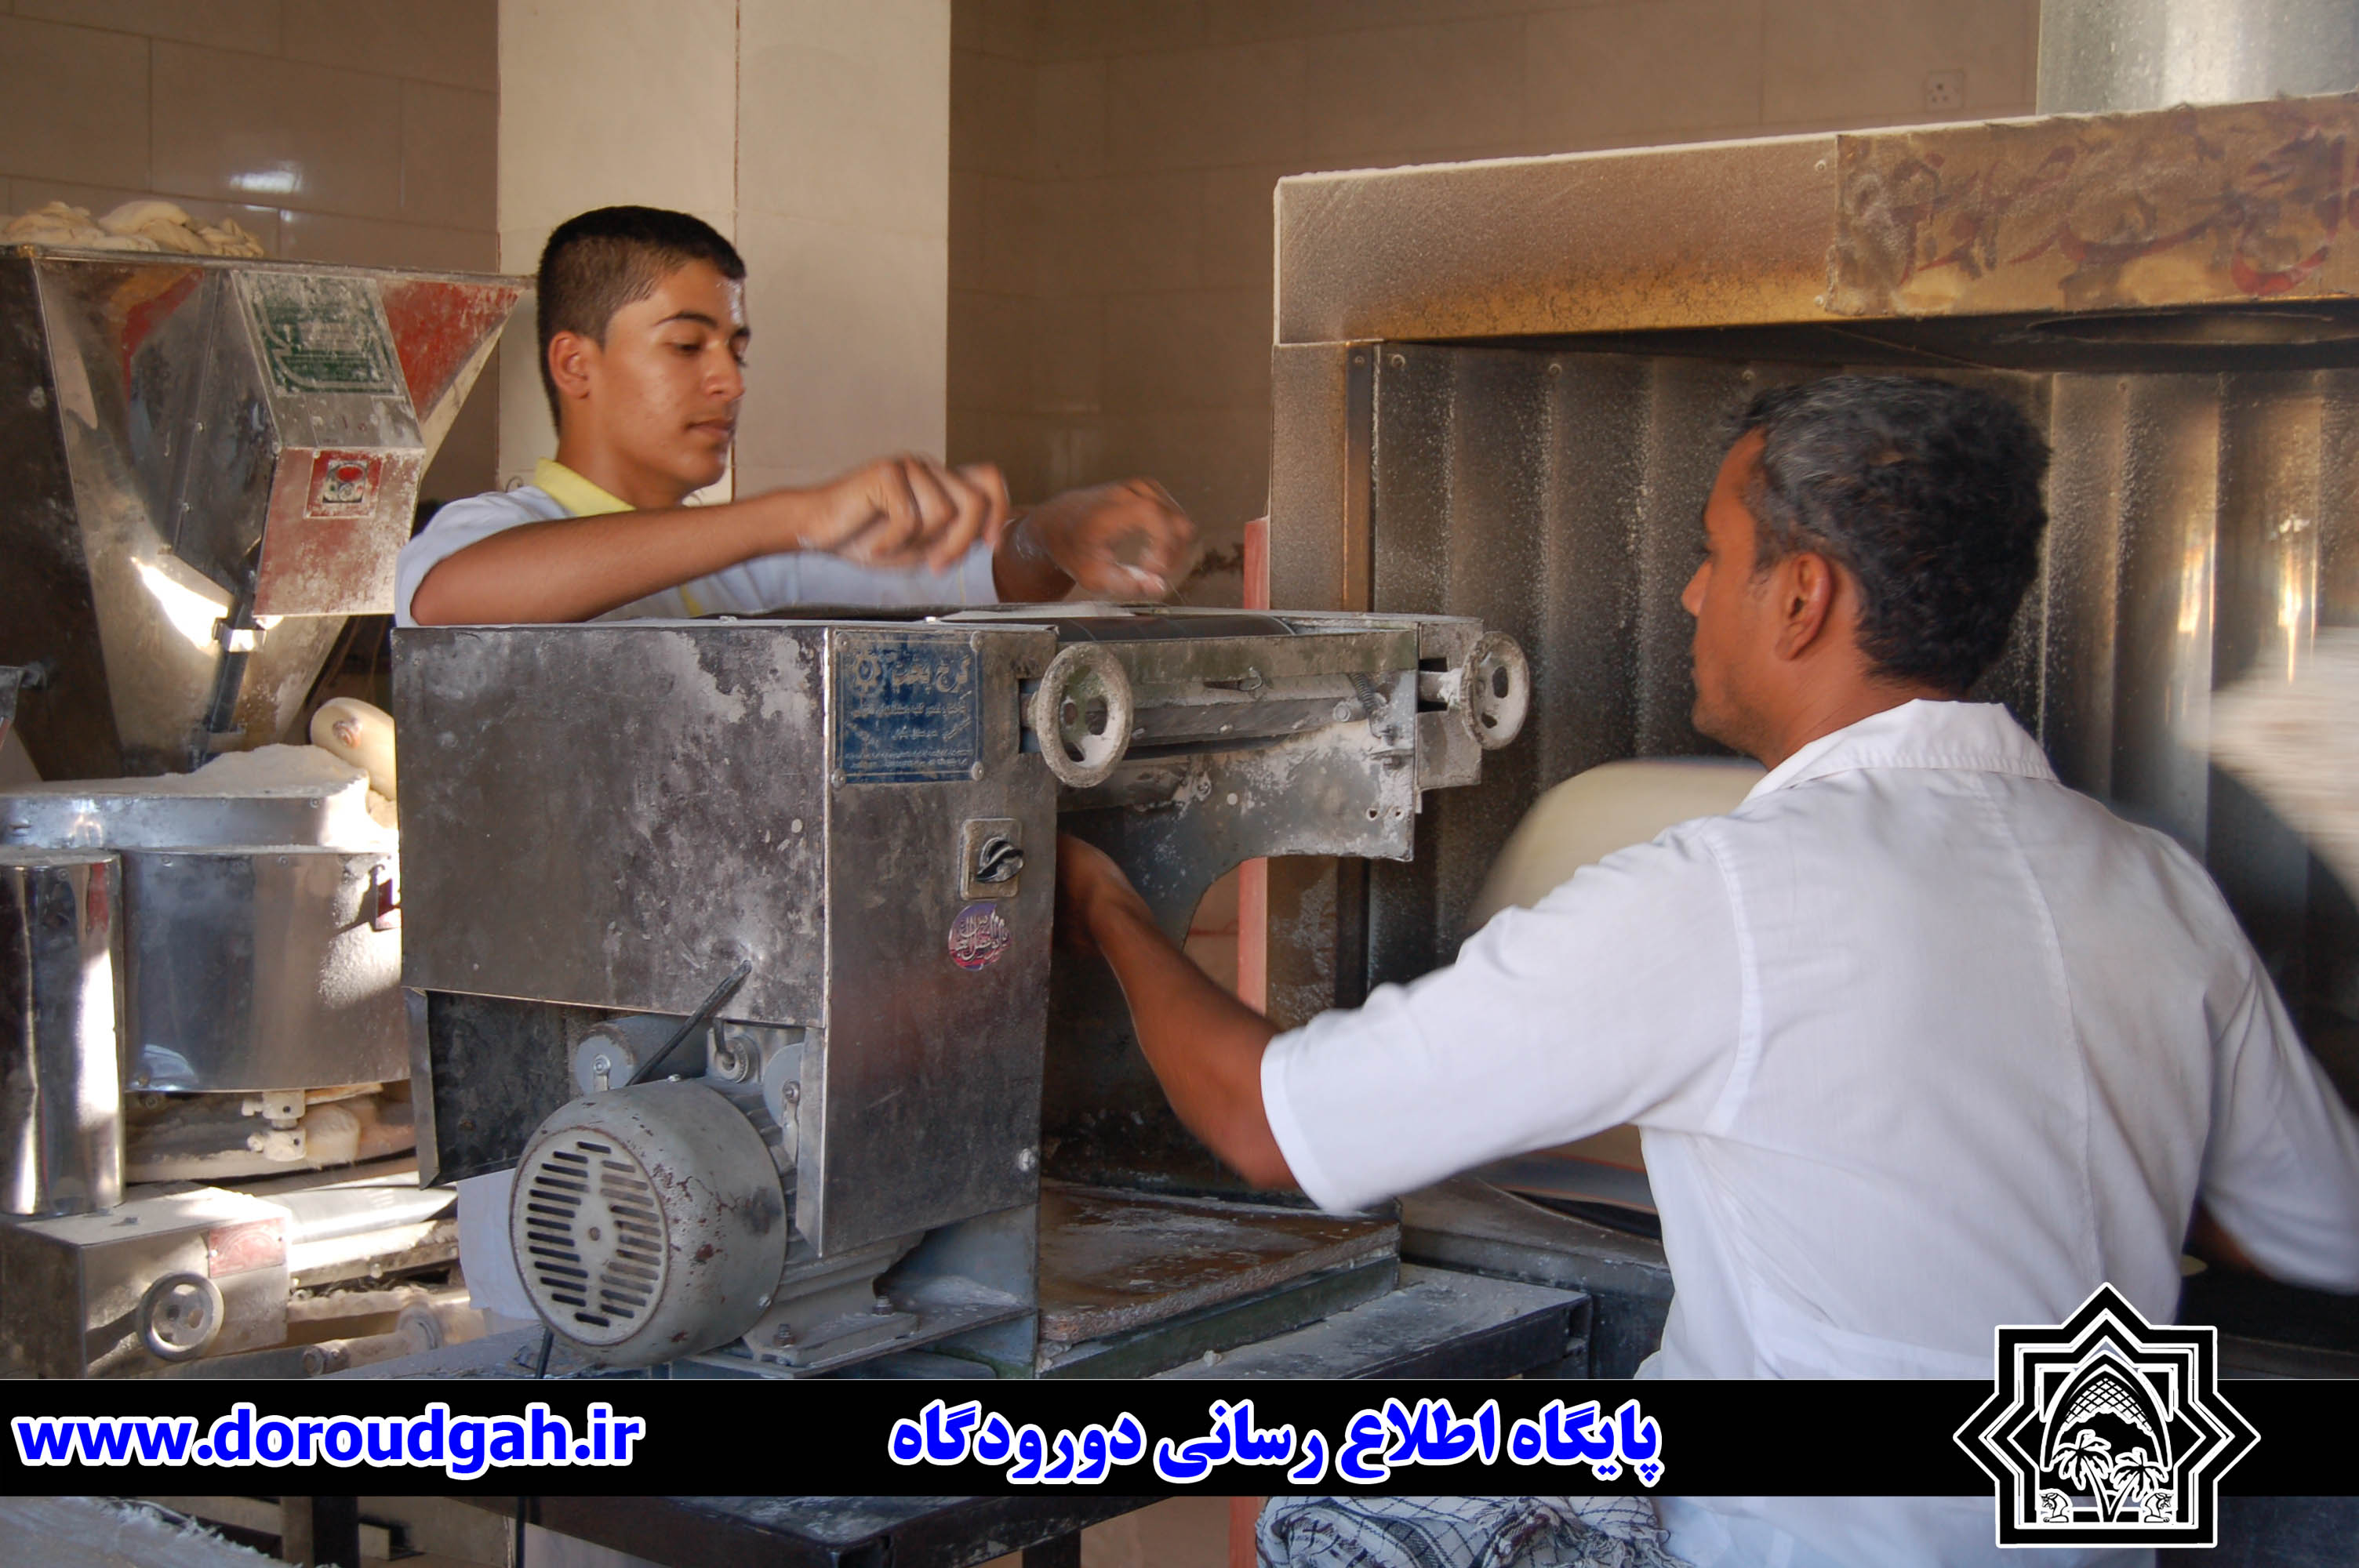 تنور نانوایان دورودگاه گرم کرم امام حسن مجتبی(ع)+تصاویر 